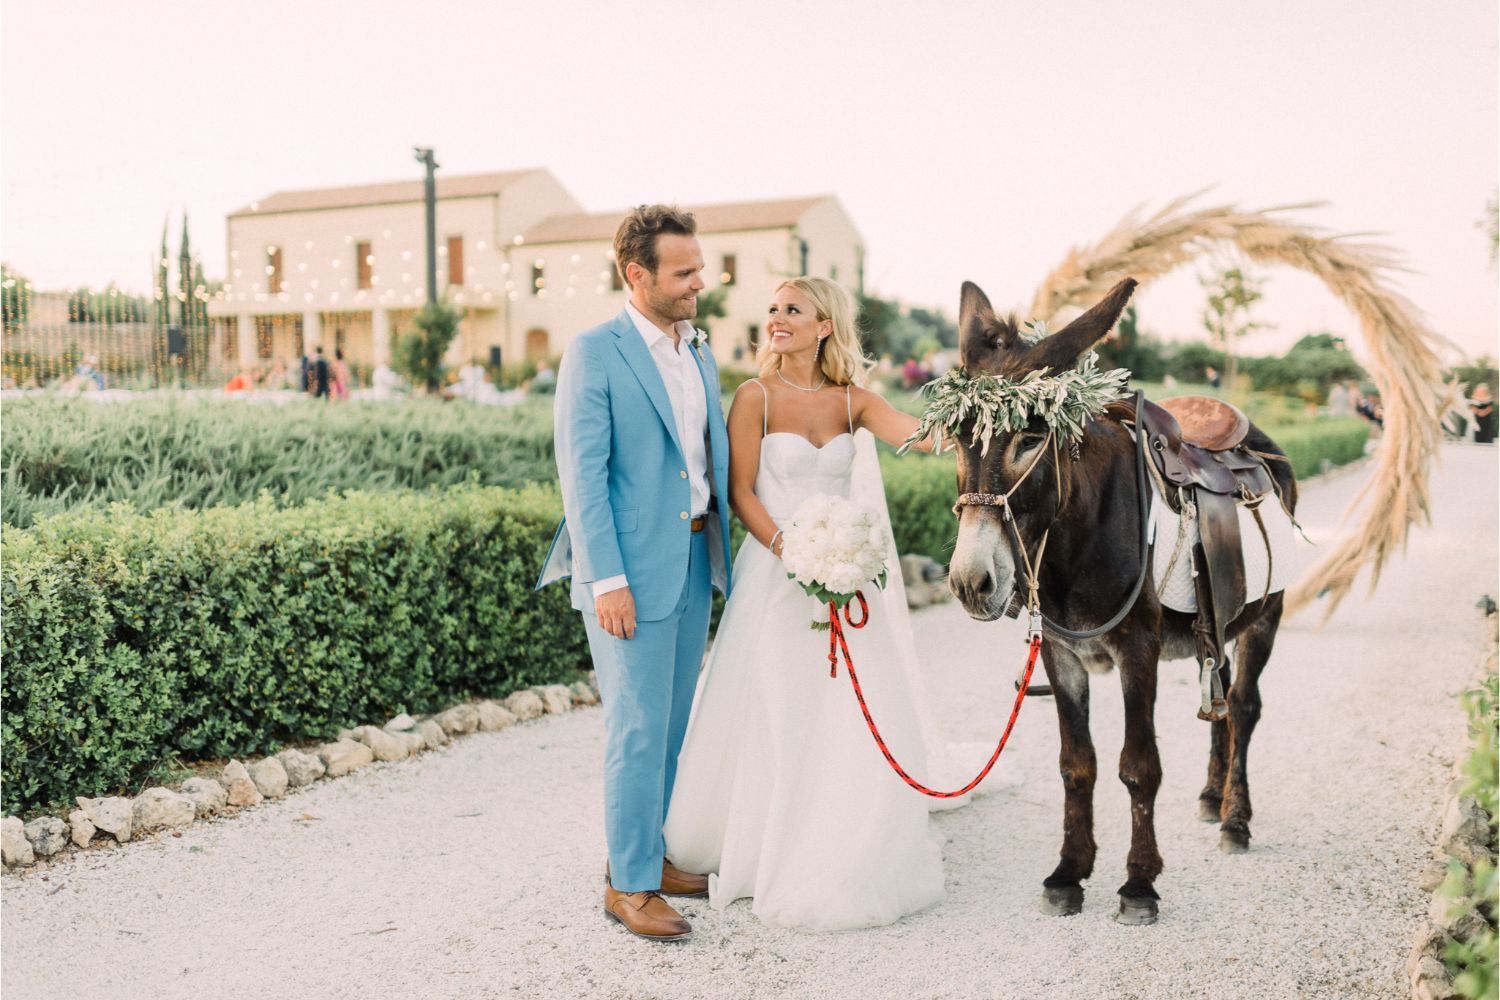 newlyweds & Cretan donkey at estate wedding